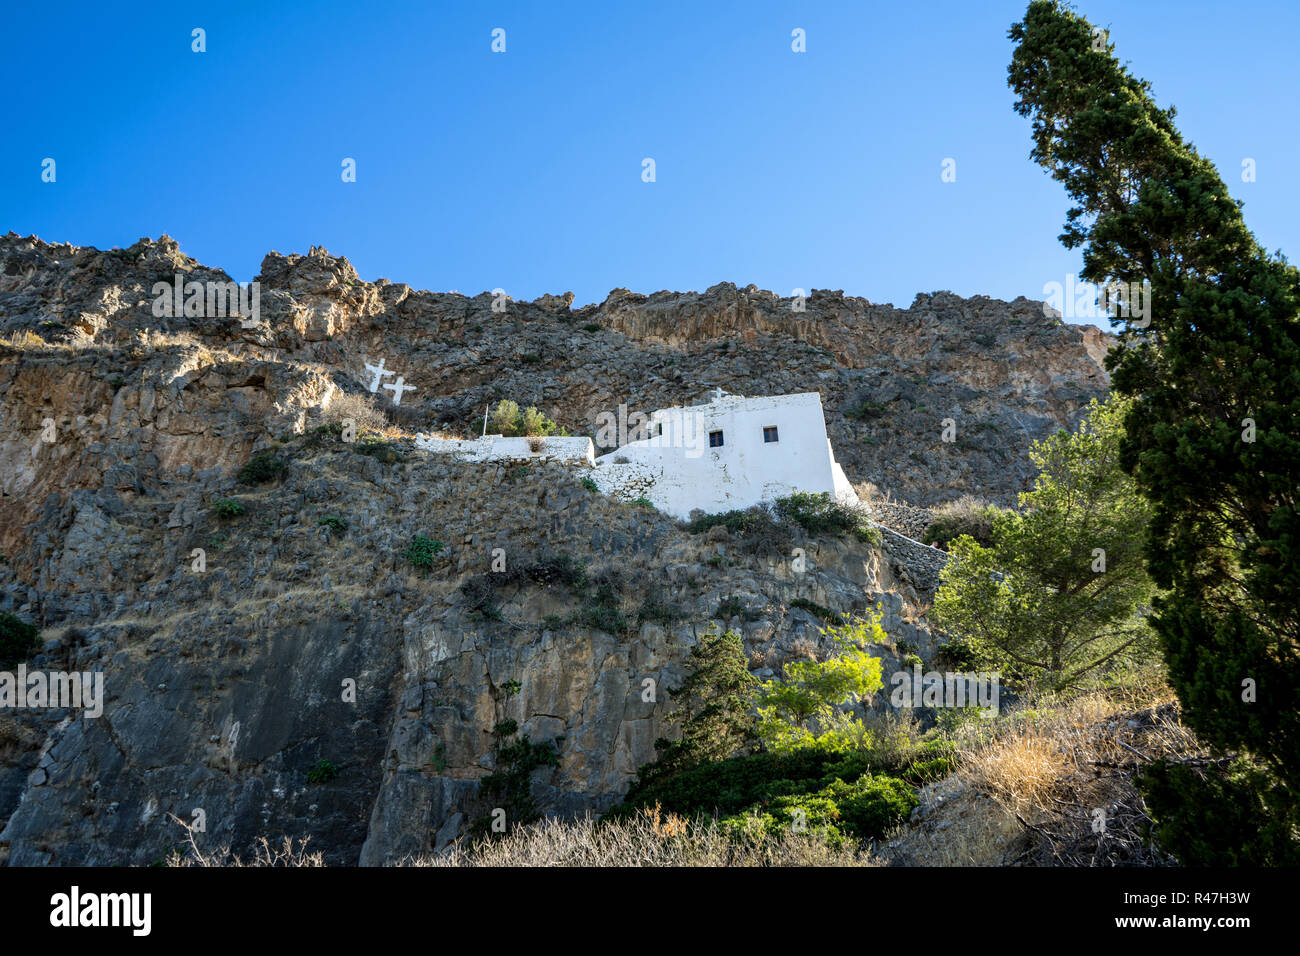 Saint John on the cliff monastery near Kapsali village in Kythira island, Greece. Stock Photo